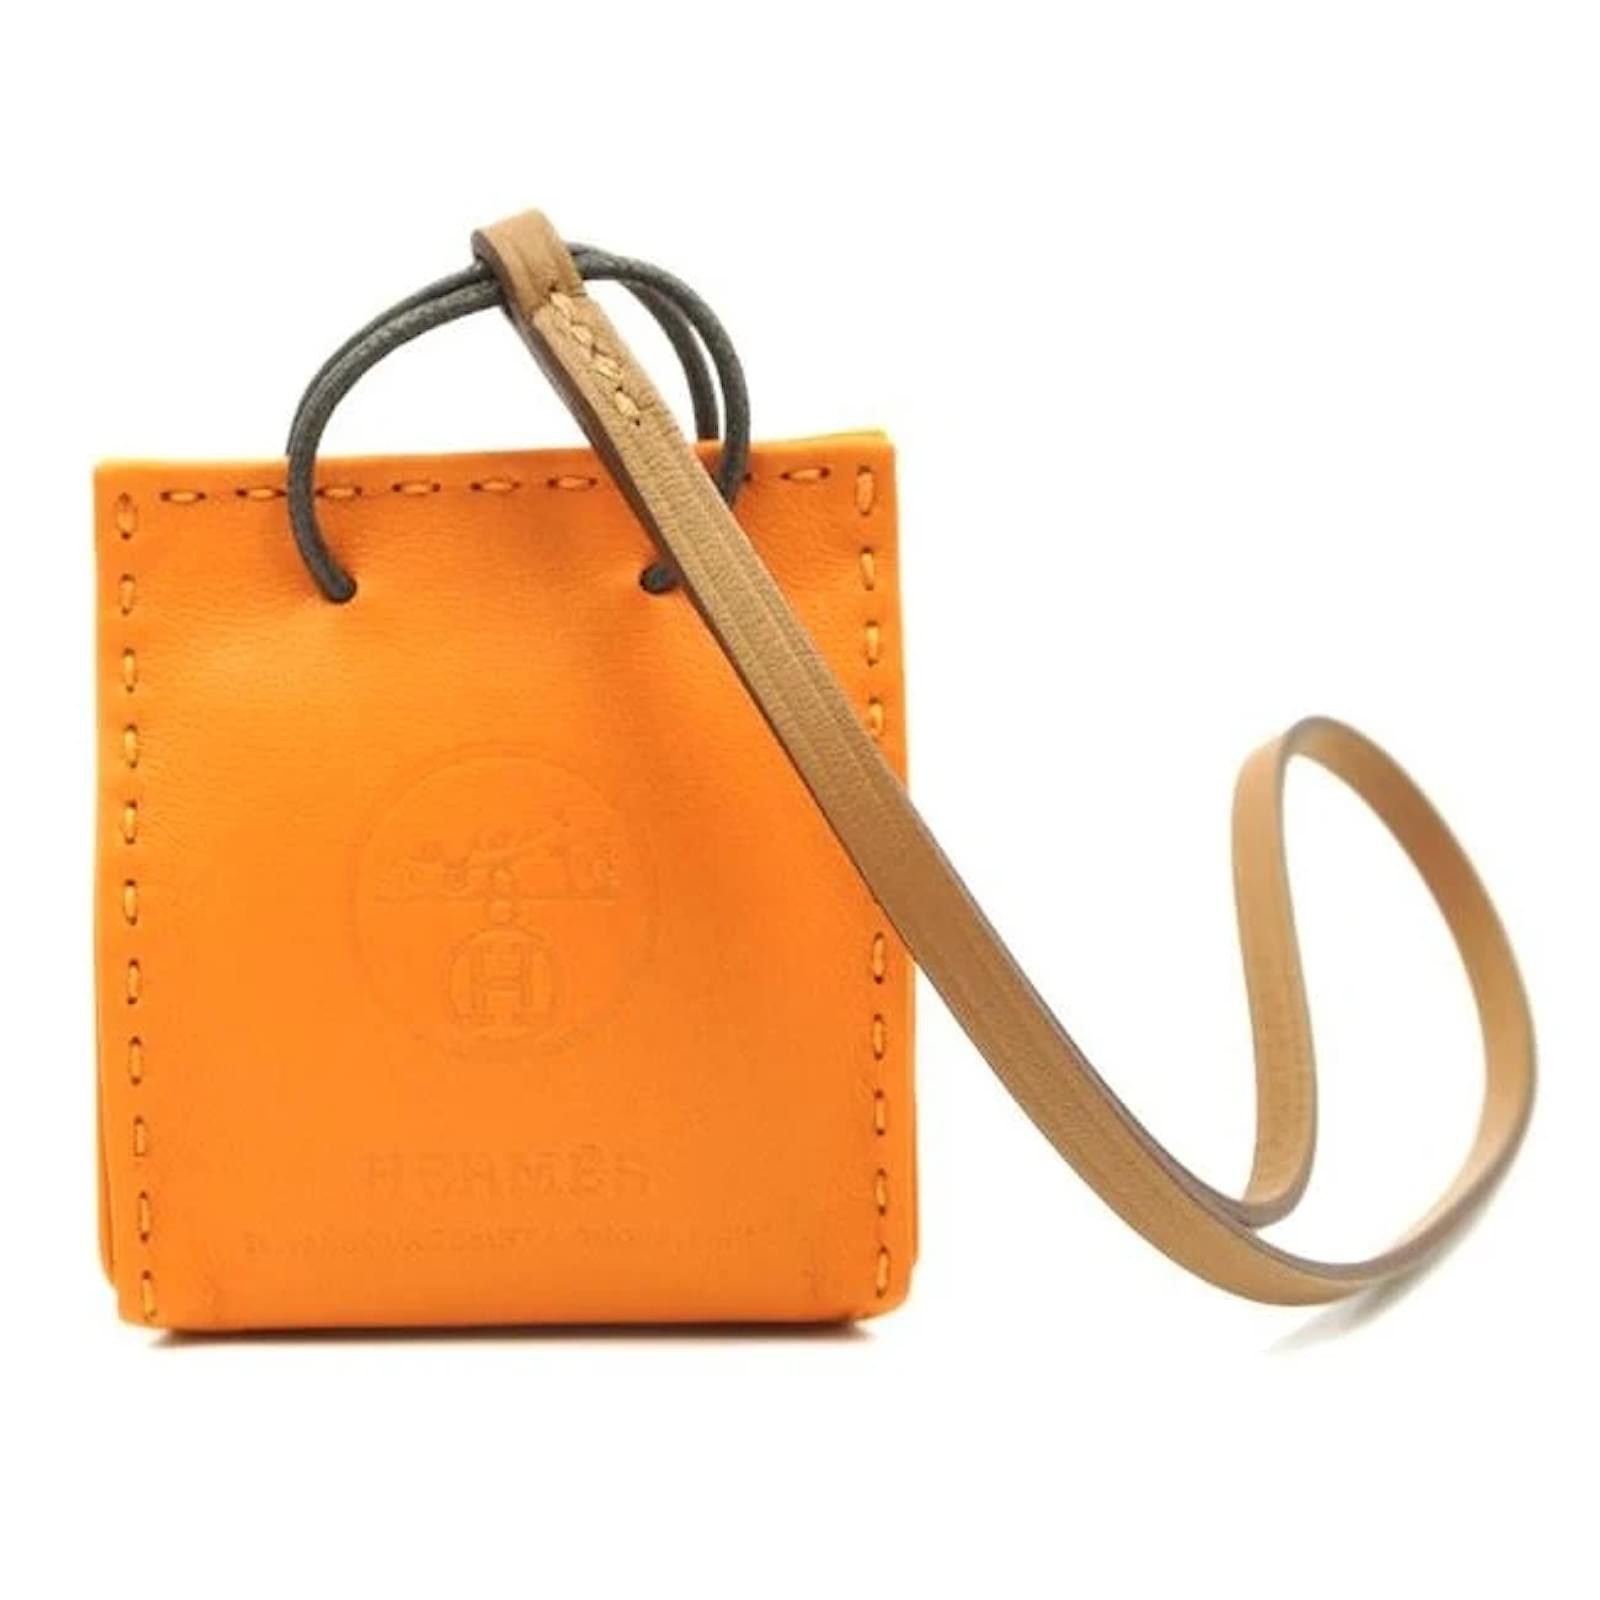 Hermes Milo Leather Shopping Bag Charm Hermes